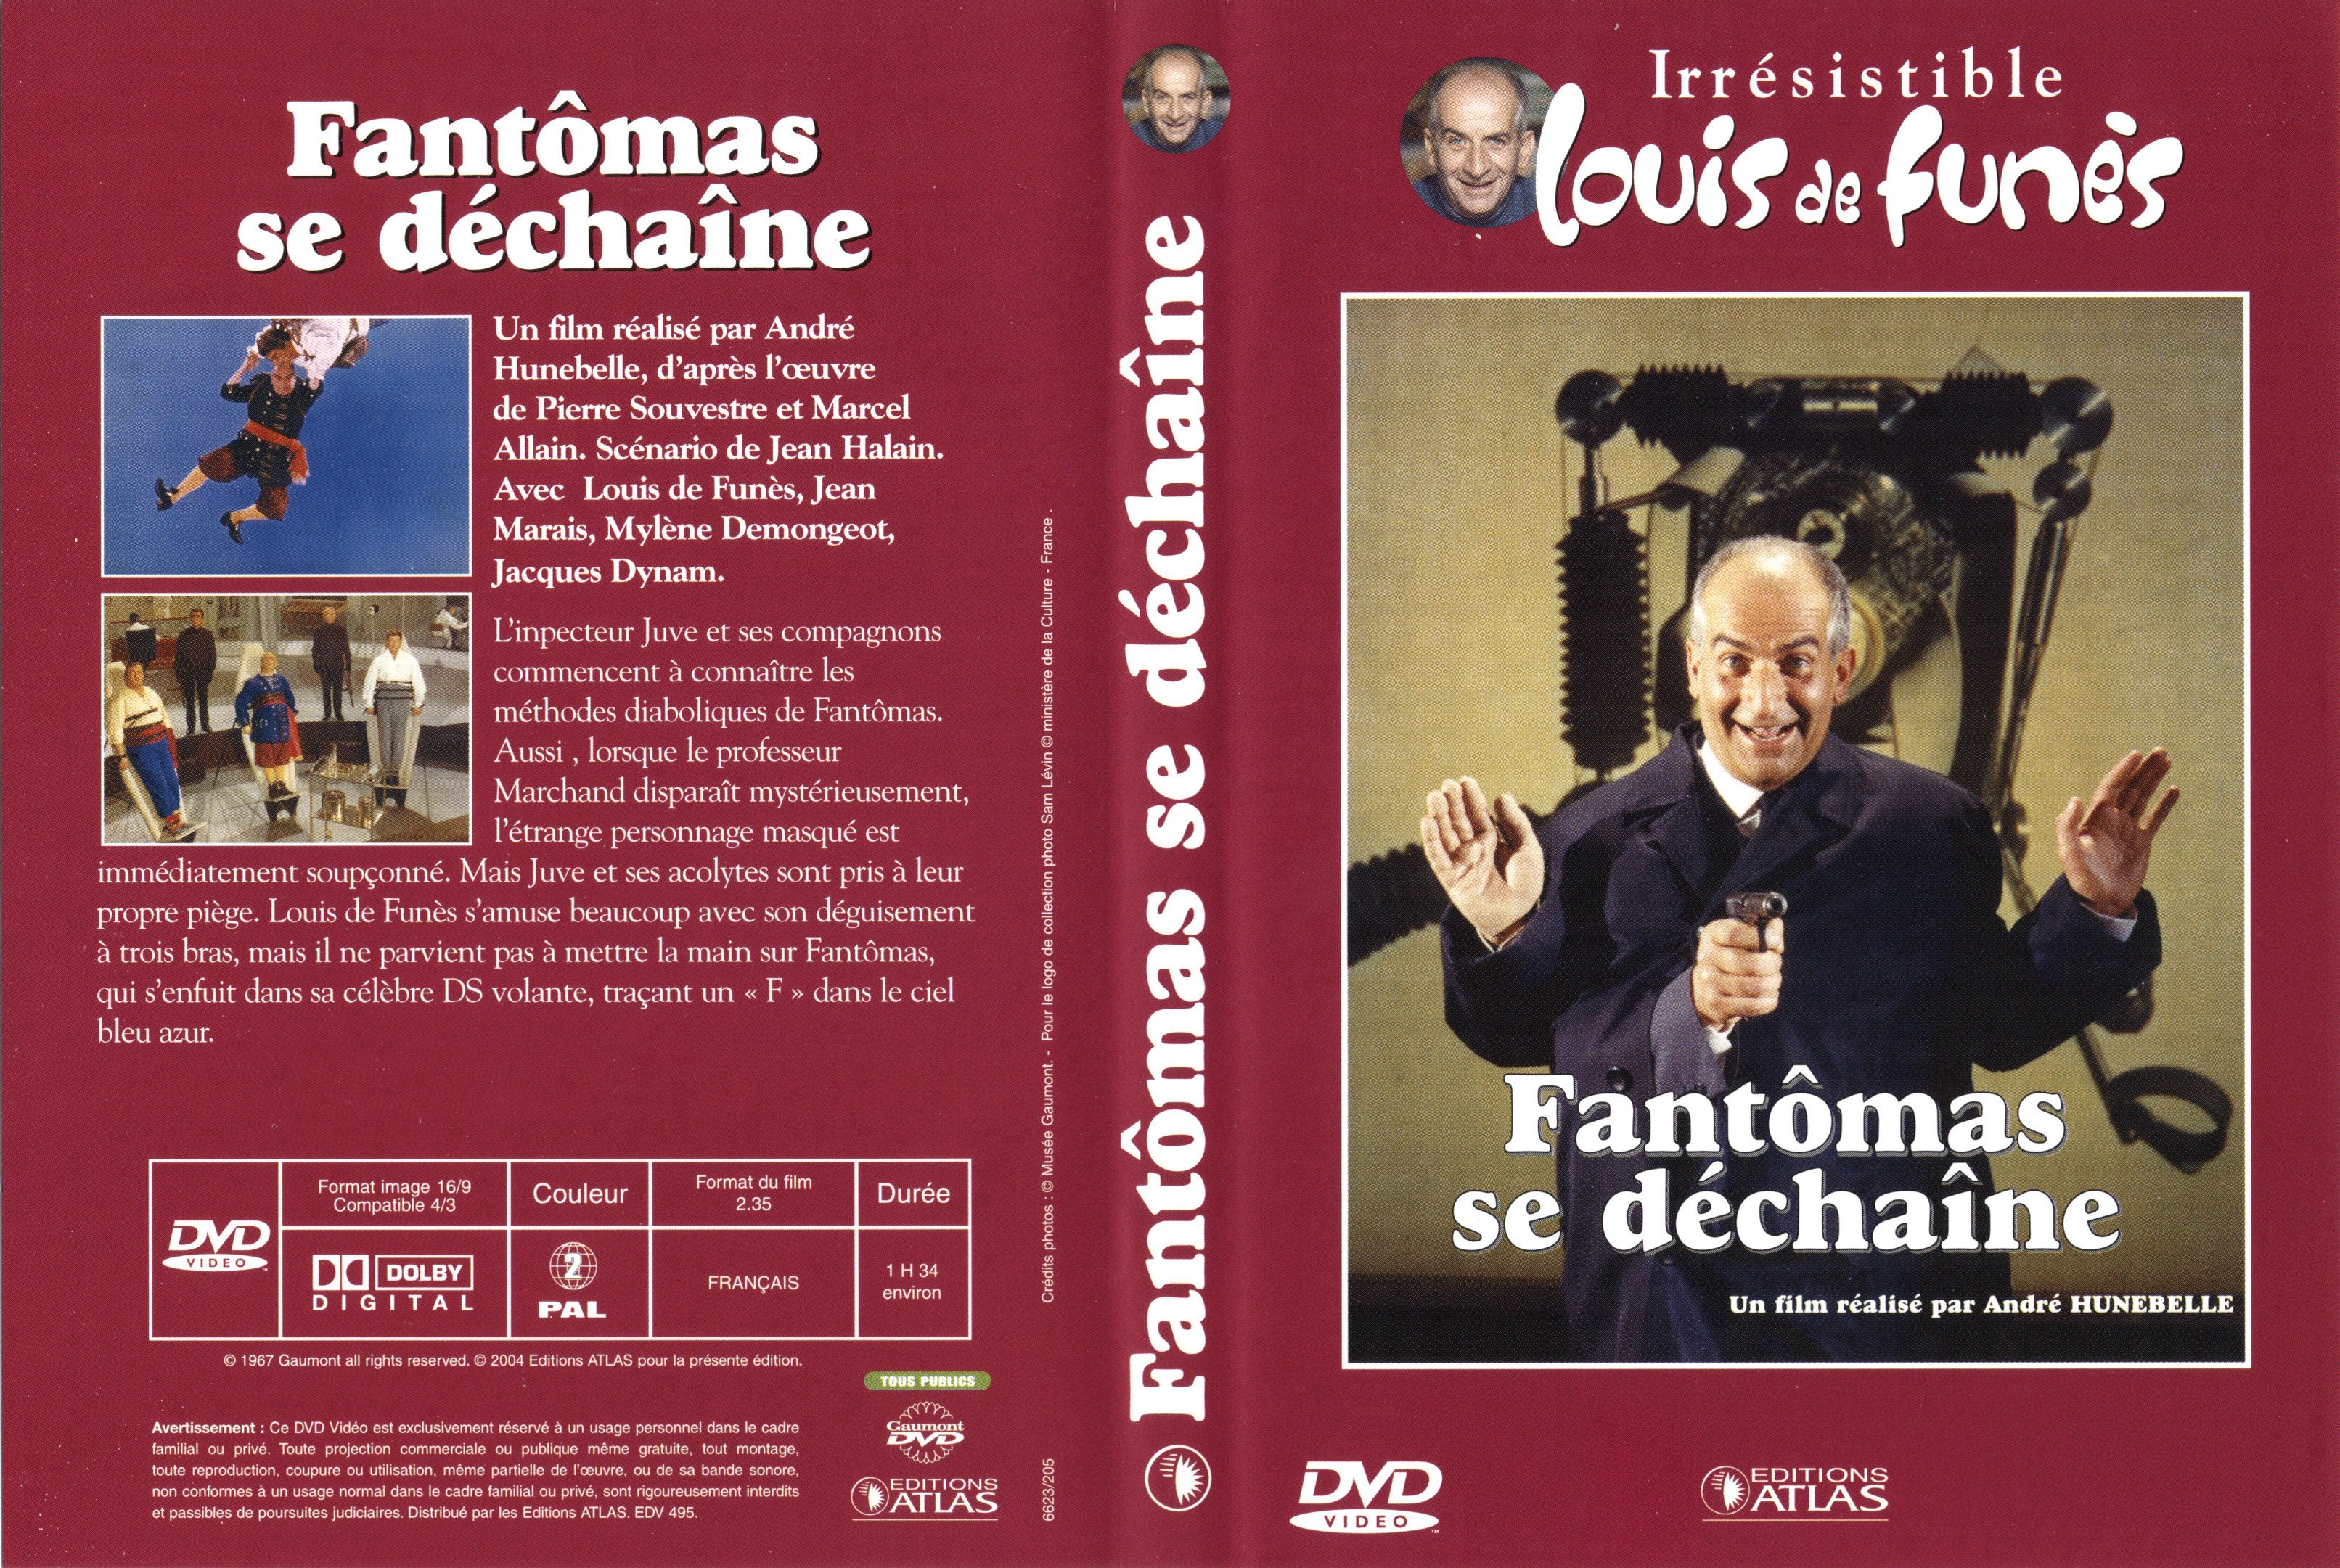 Jaquette DVD Fantomas se dechaine v2